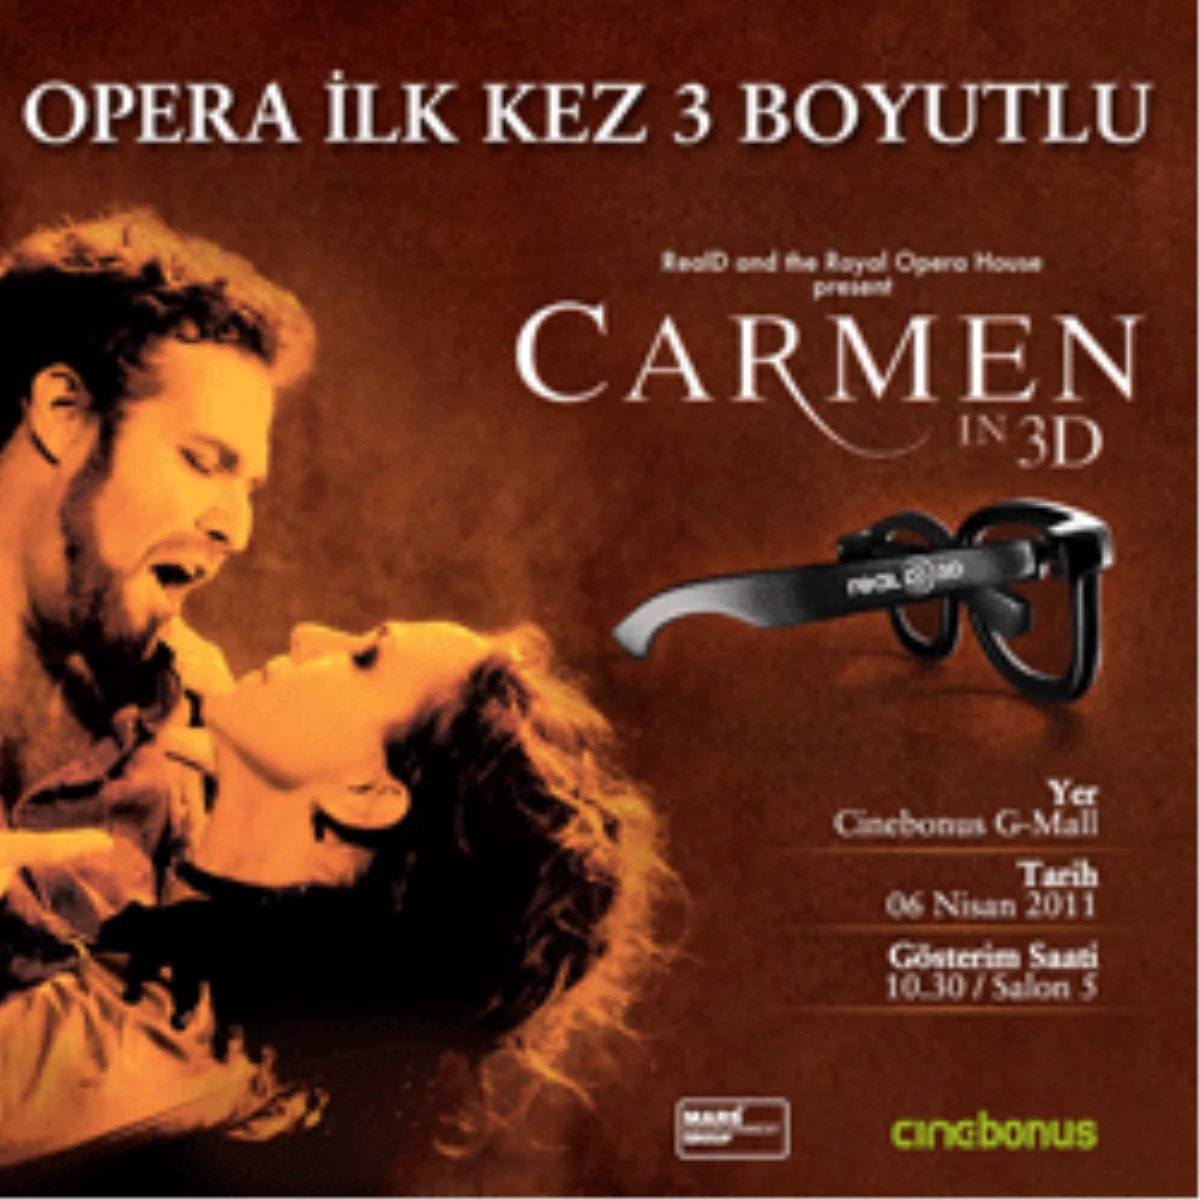 "Carmen 3d" Opera İlk Kez 3 Boyutlu